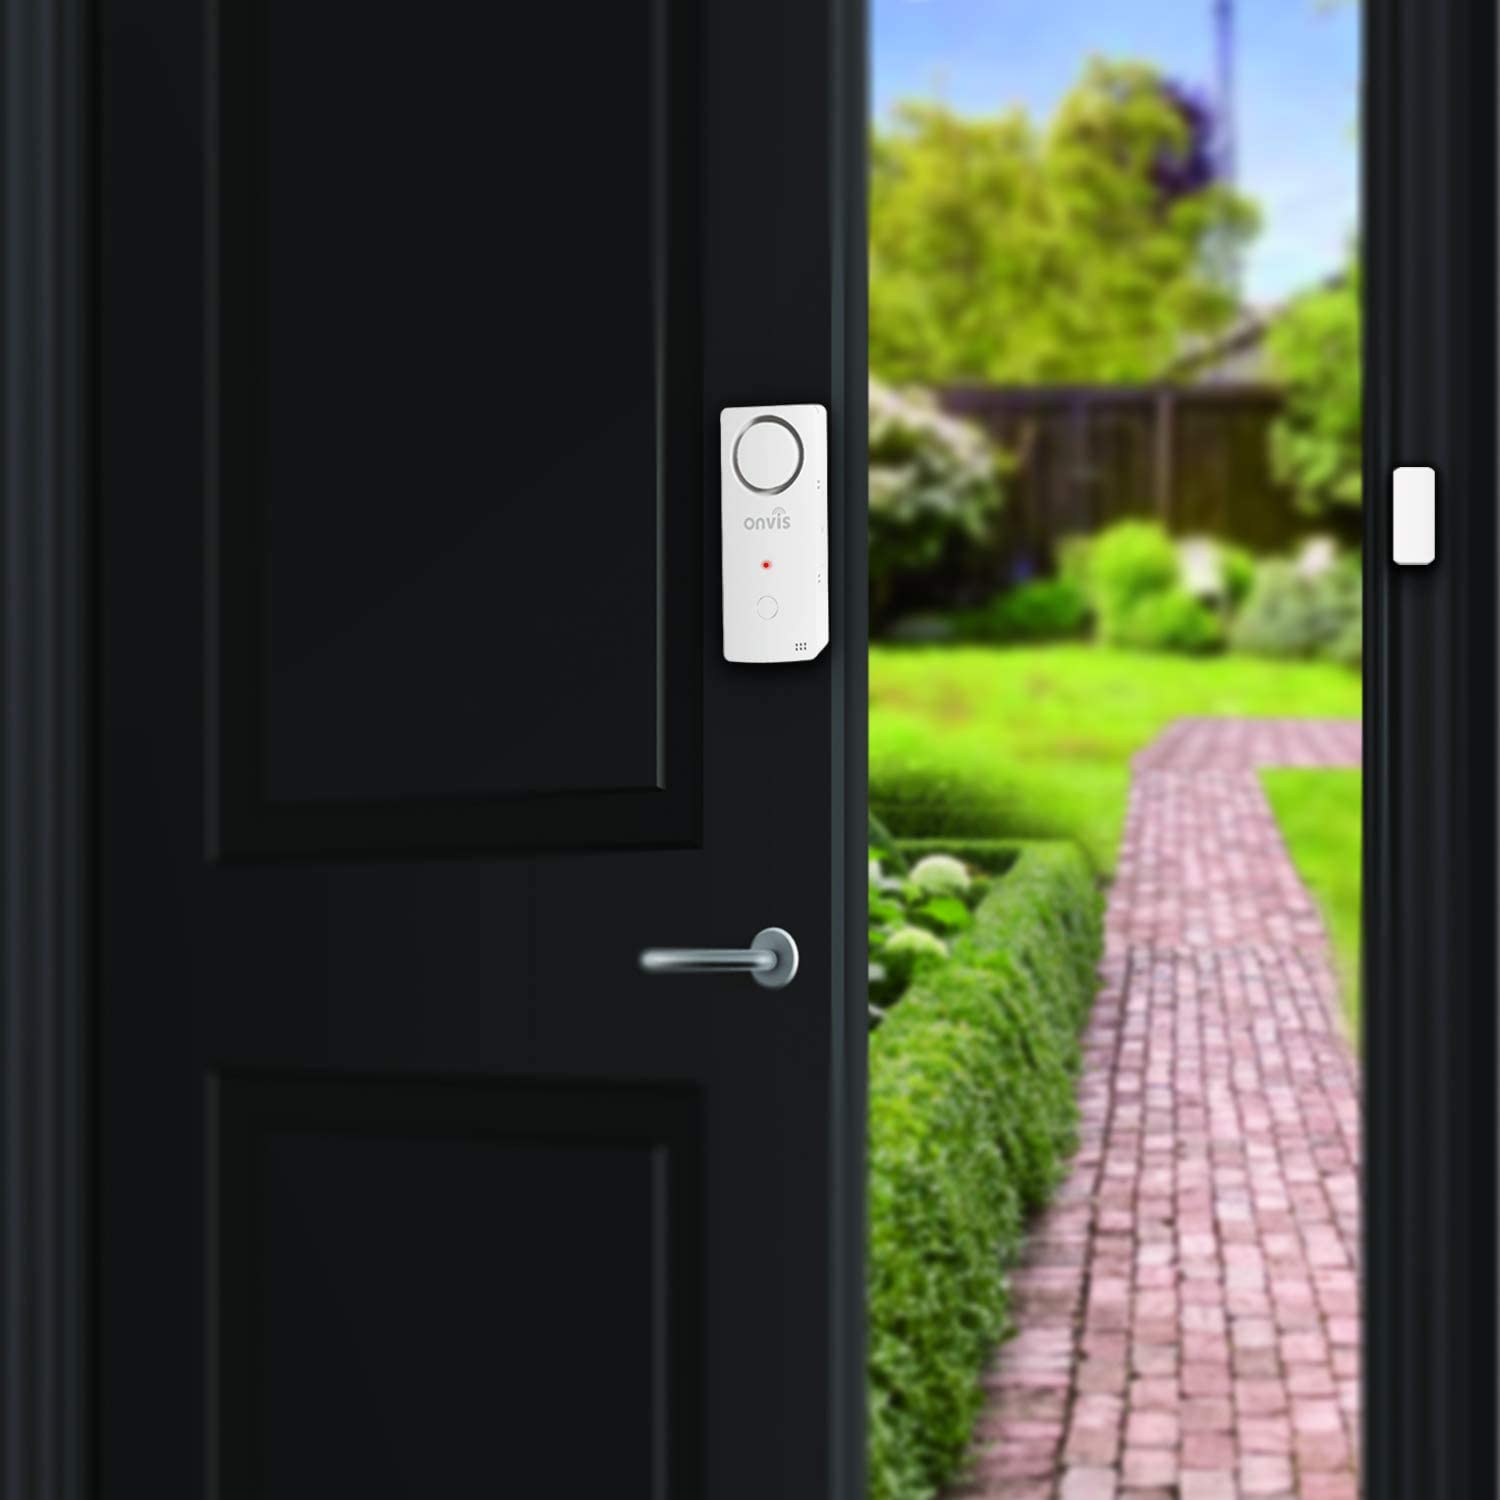 onvis smart home security burglar alarm door window contact sensor onvis motion alarm 5 iShack